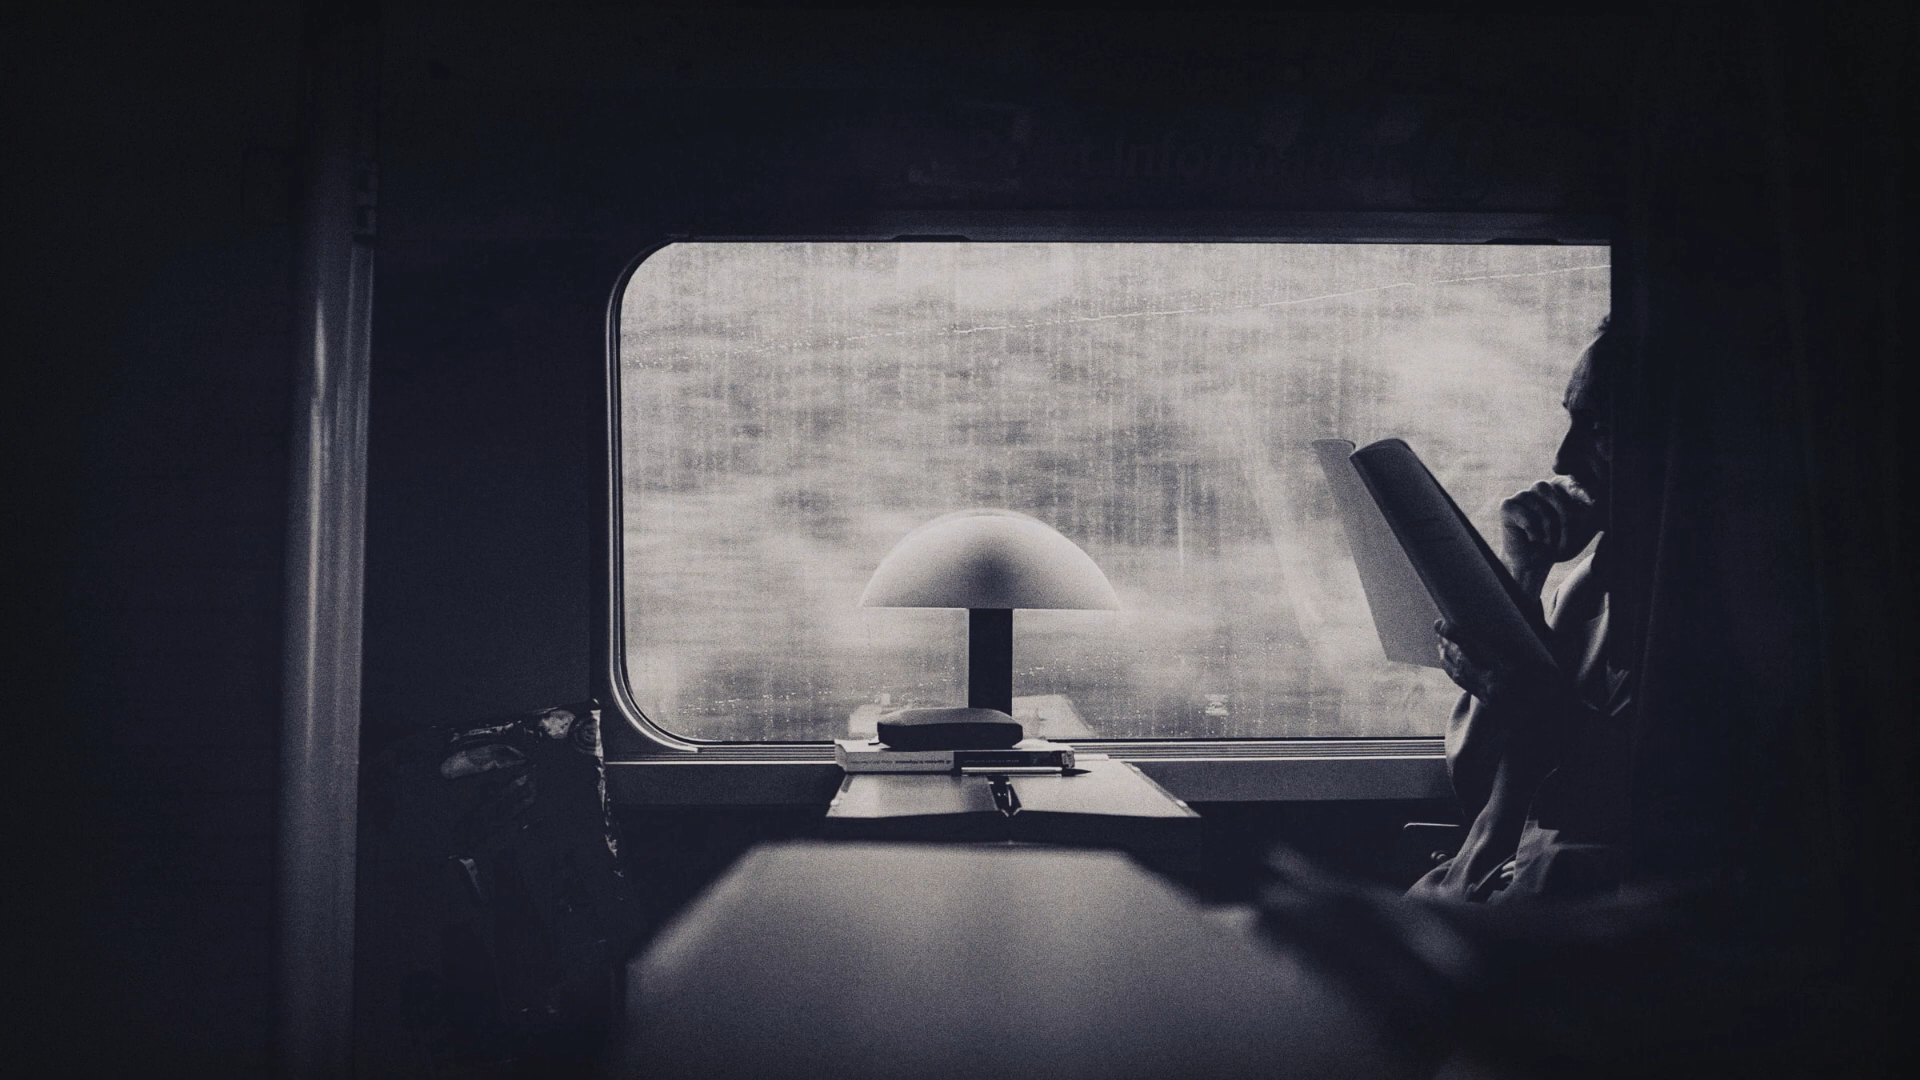 【白噪音】在火车上看书听雨 直到昏昏欲睡 乘务员声音 铁轨声 交通旅行氛围音 环境音